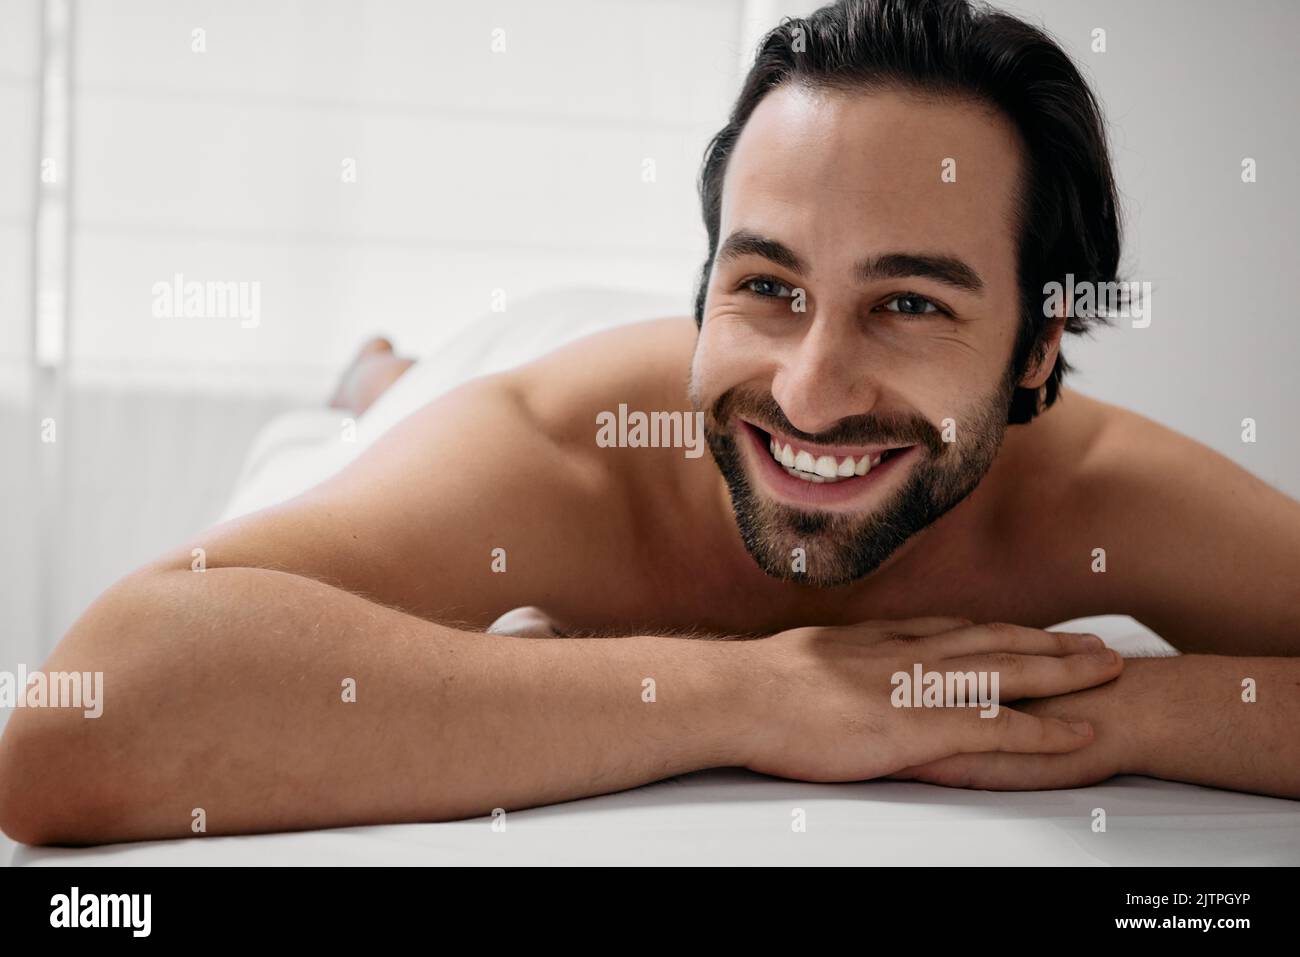 Week-end au centre de bien-être. Portrait d'un homme heureux avec un sourire en dents de souris allongé sur la table de massage après un massage relaxant anti-stress Banque D'Images